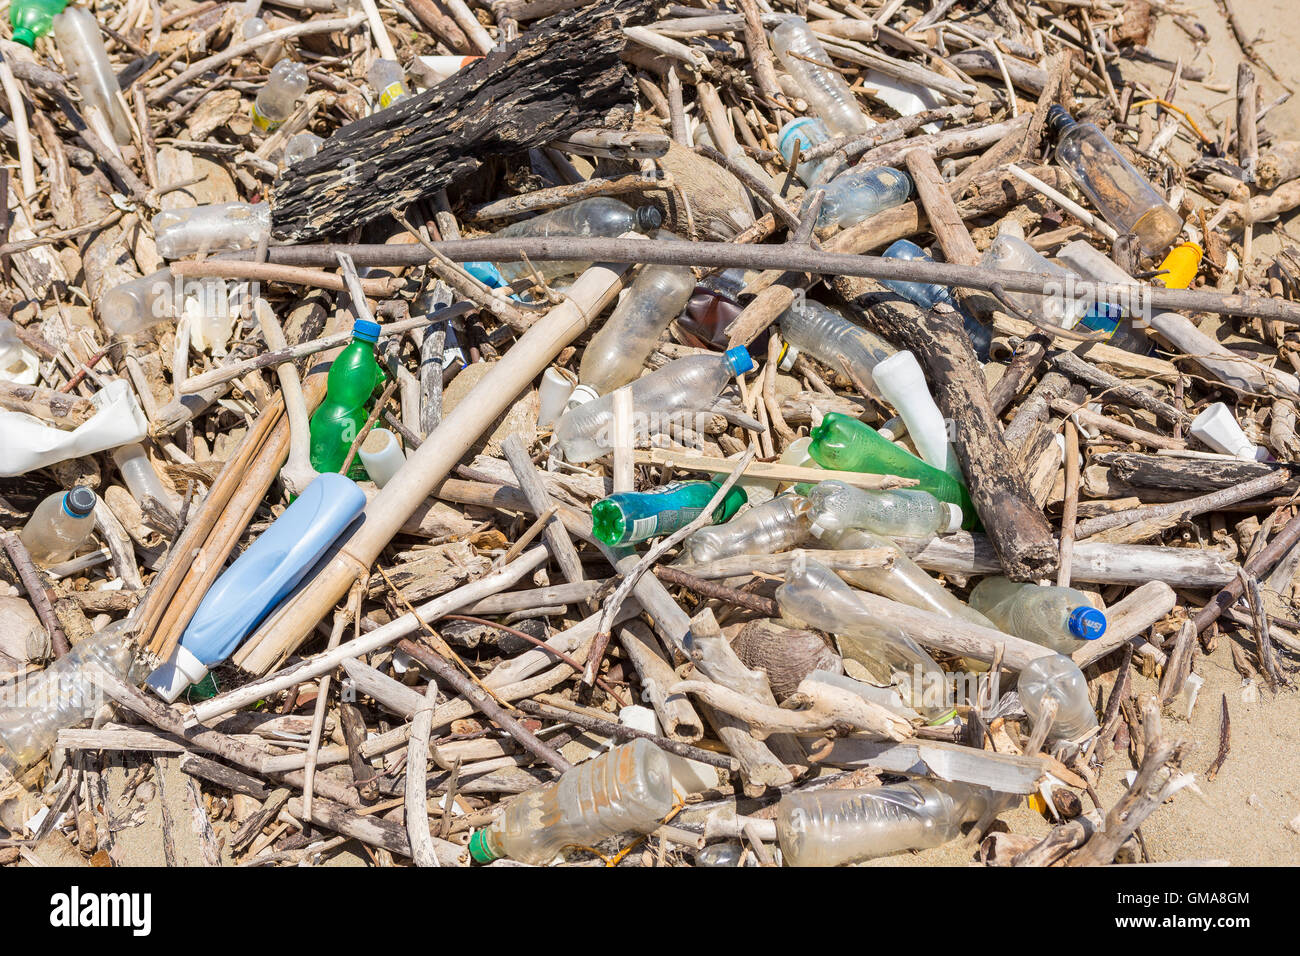 Repubblica Dominicana - immondizia sulla spiaggia, bottiglie di plastica e cestino, vicino alla bocca del fiume Yasica. Foto Stock